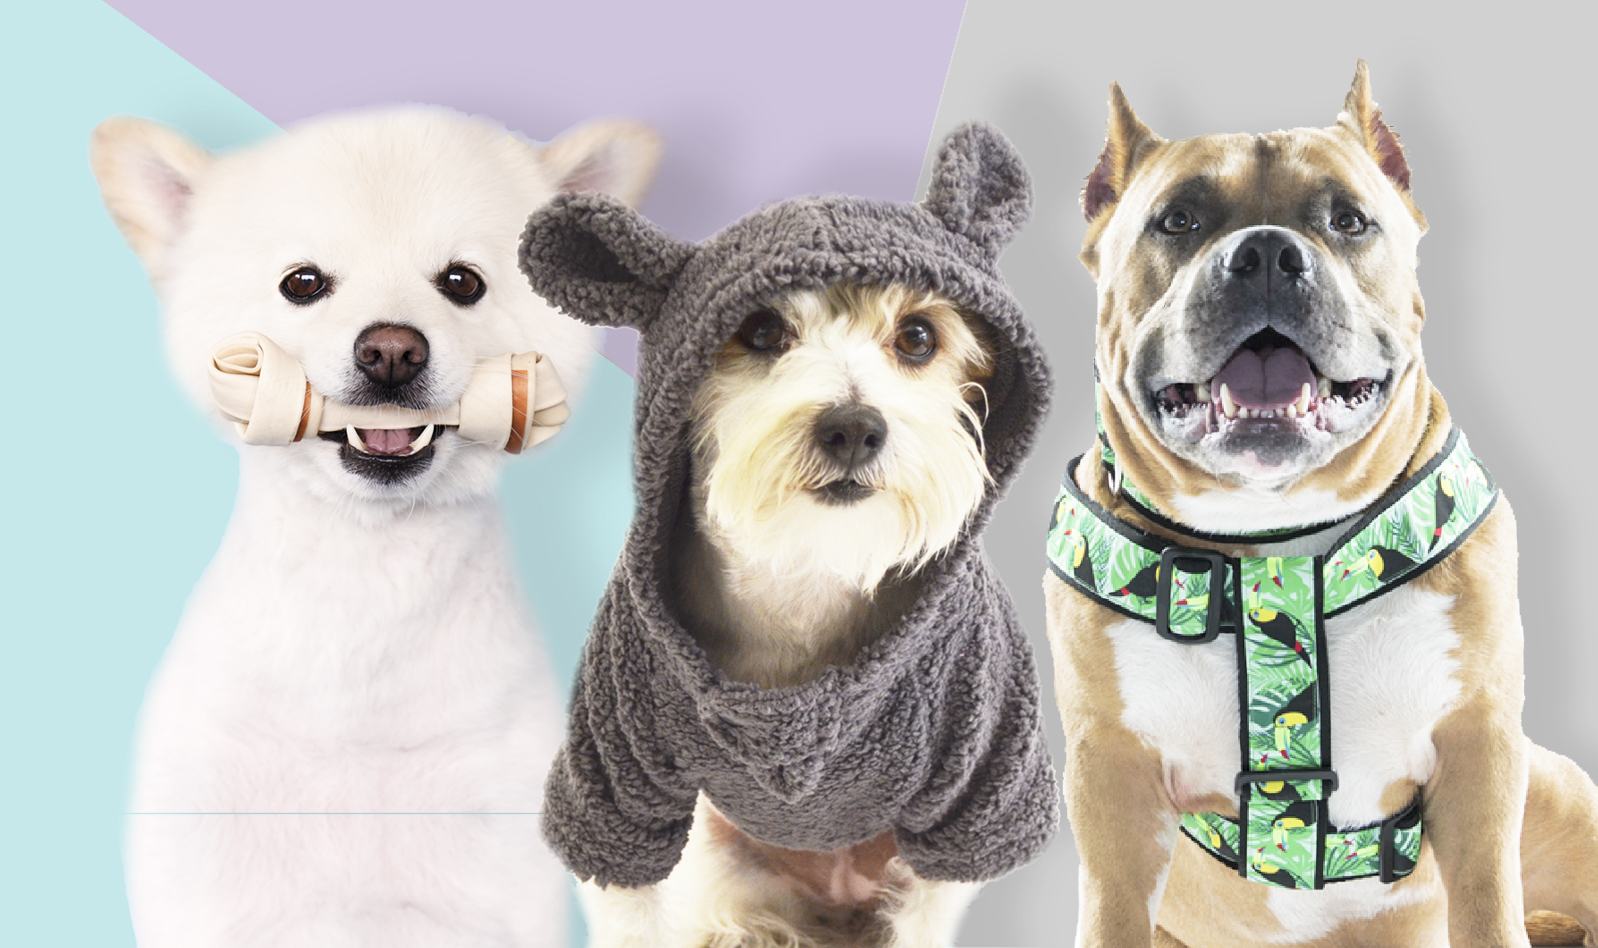 2 Paquetes TVMALL Pañales para Perros Pantalones Sanitarios Lavables Reutilizables con Mascotas Perros Fisiológicos para Gatos de Perros Solución Sanitaria para la Incontinencia de Mascotas 